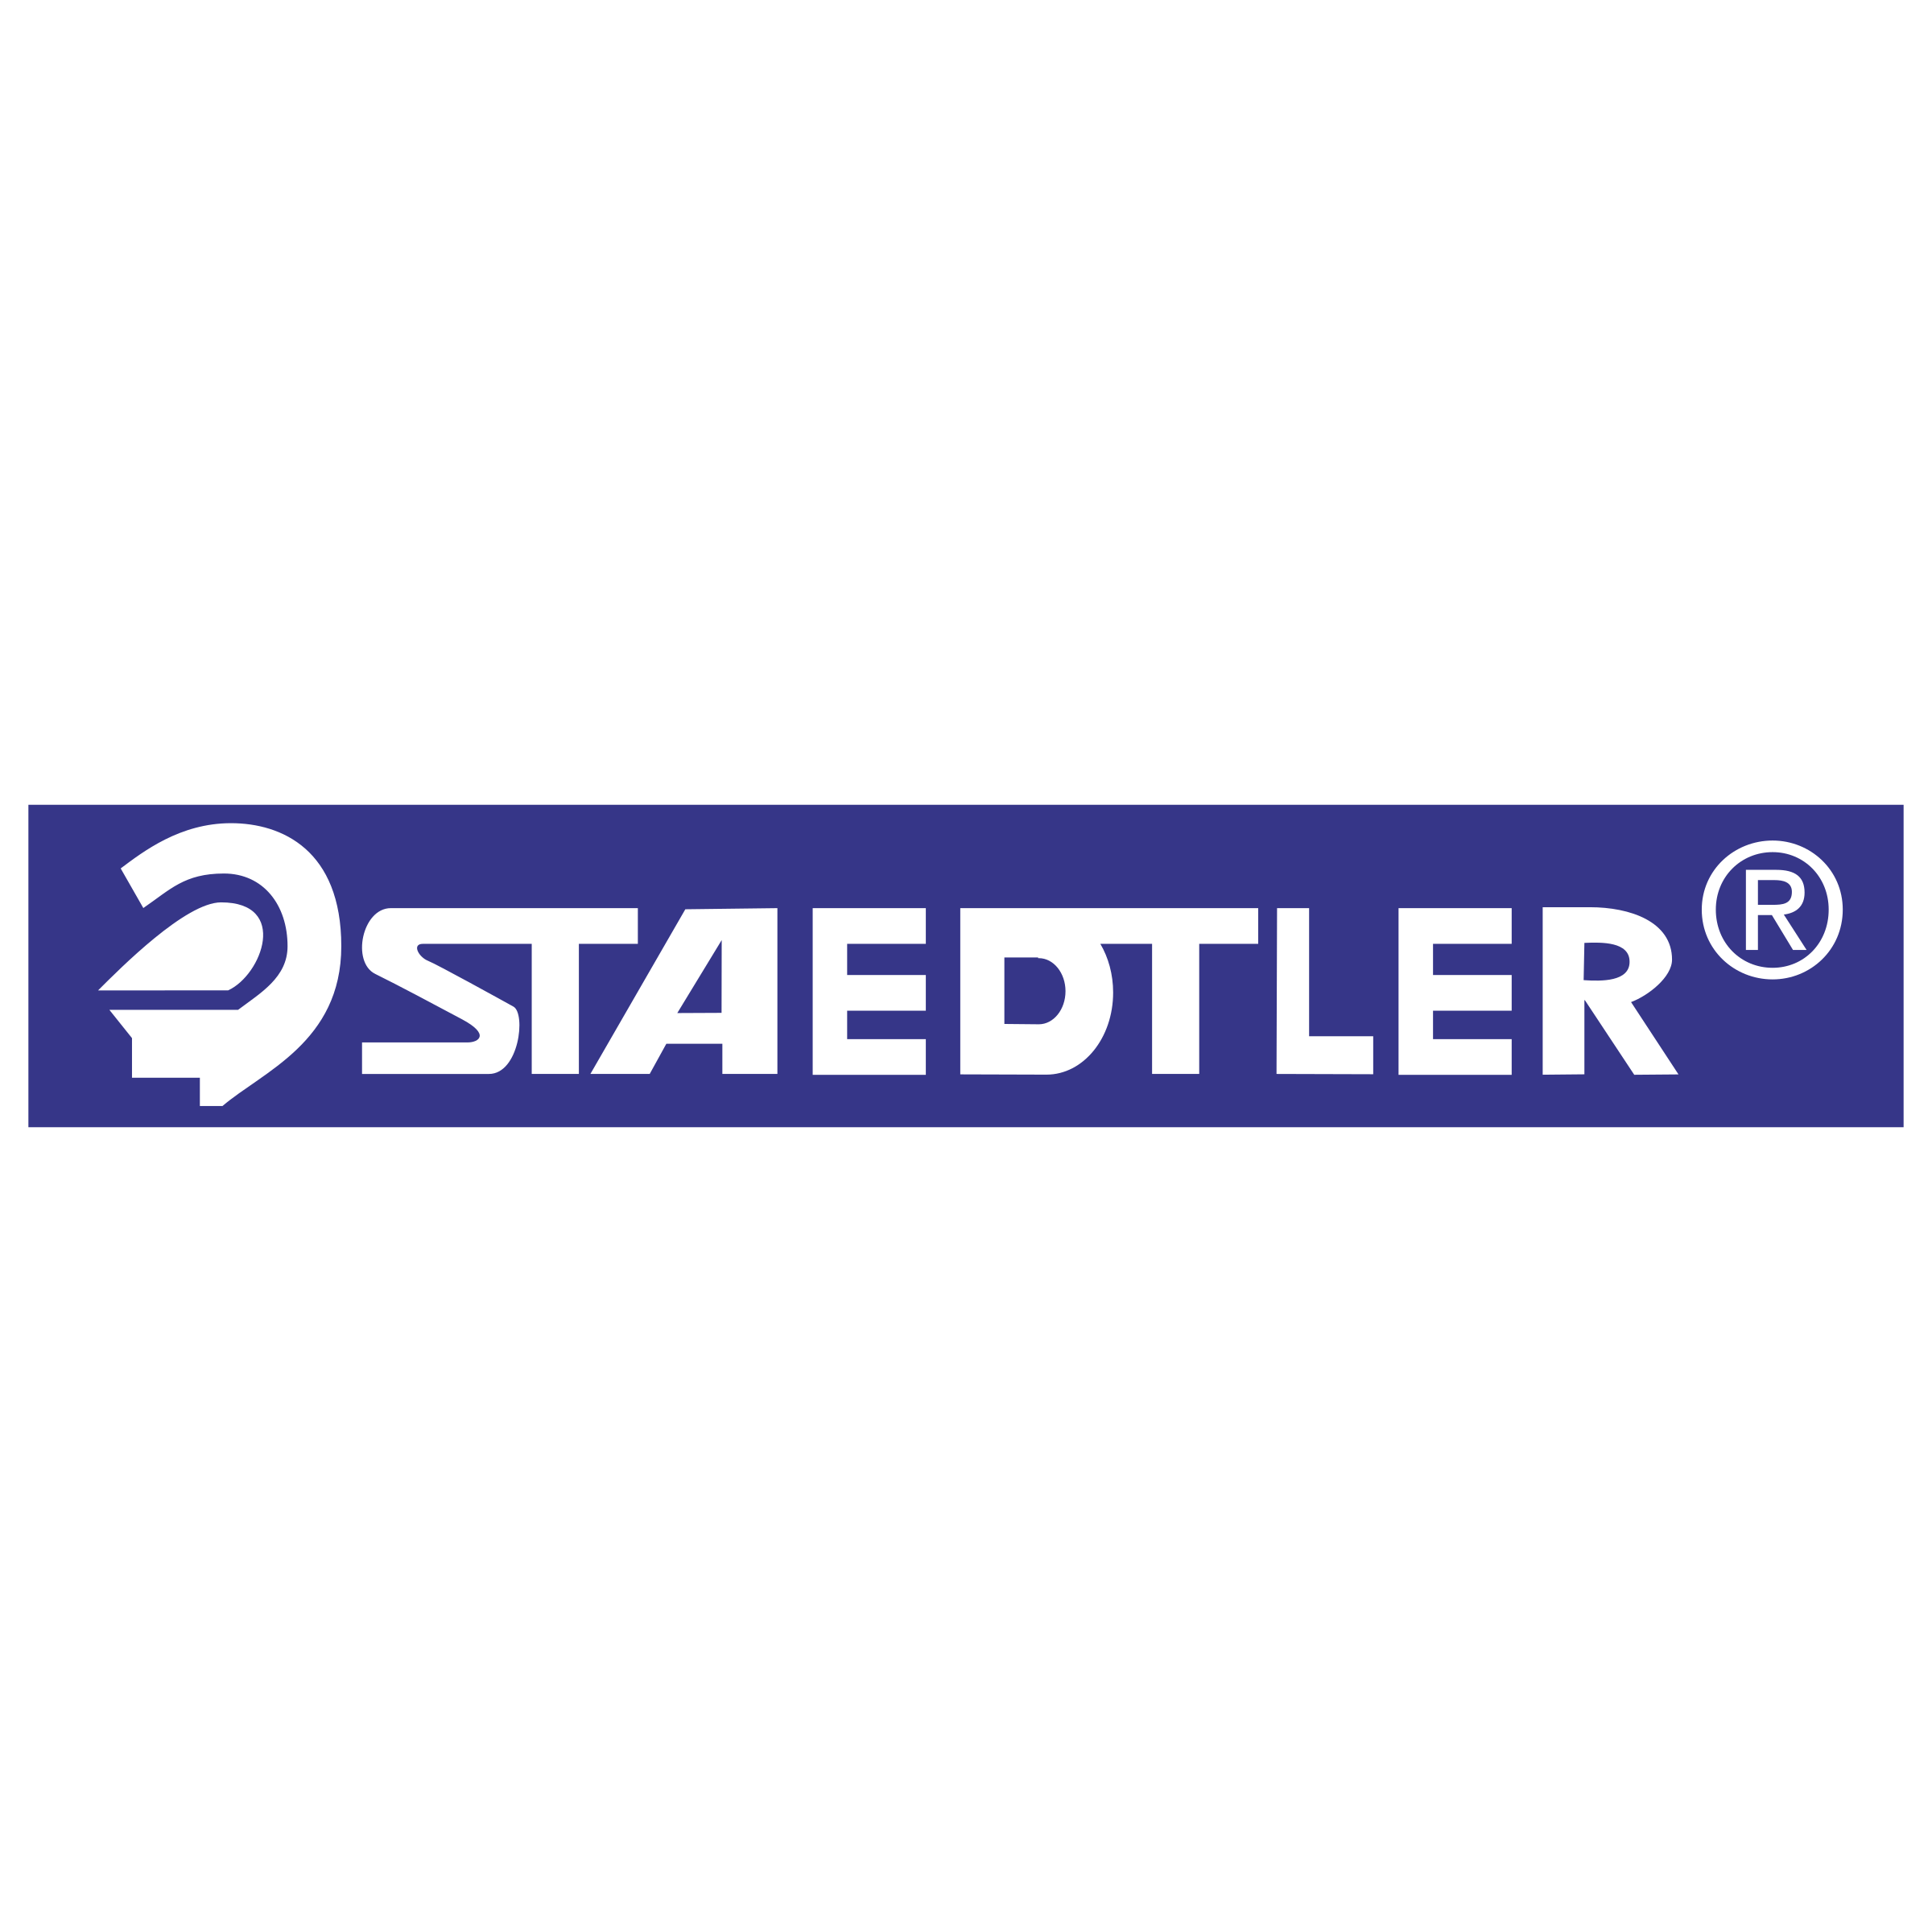 Staedtler Logo - Staedtler Logo PNG Transparent & SVG Vector